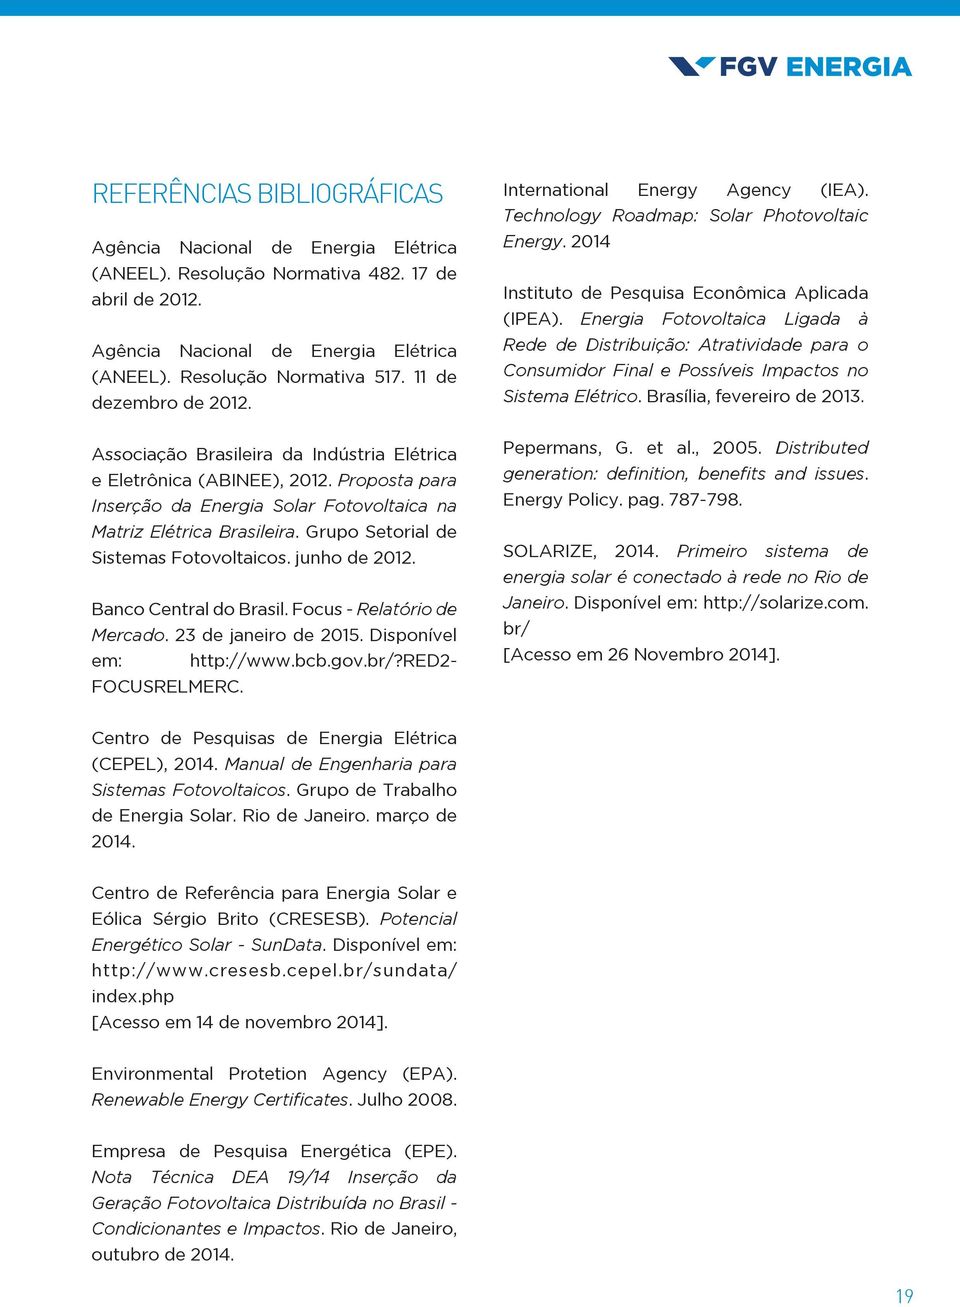 Grupo Setorial de Sistemas Fotovoltaicos. junho de 2012. Banco Central do Brasil. Focus - Relatório de Mercado. 23 de janeiro de 2015. Disponível em: http://www.bcb.gov.br/?red2- FOCUSRELMERC.